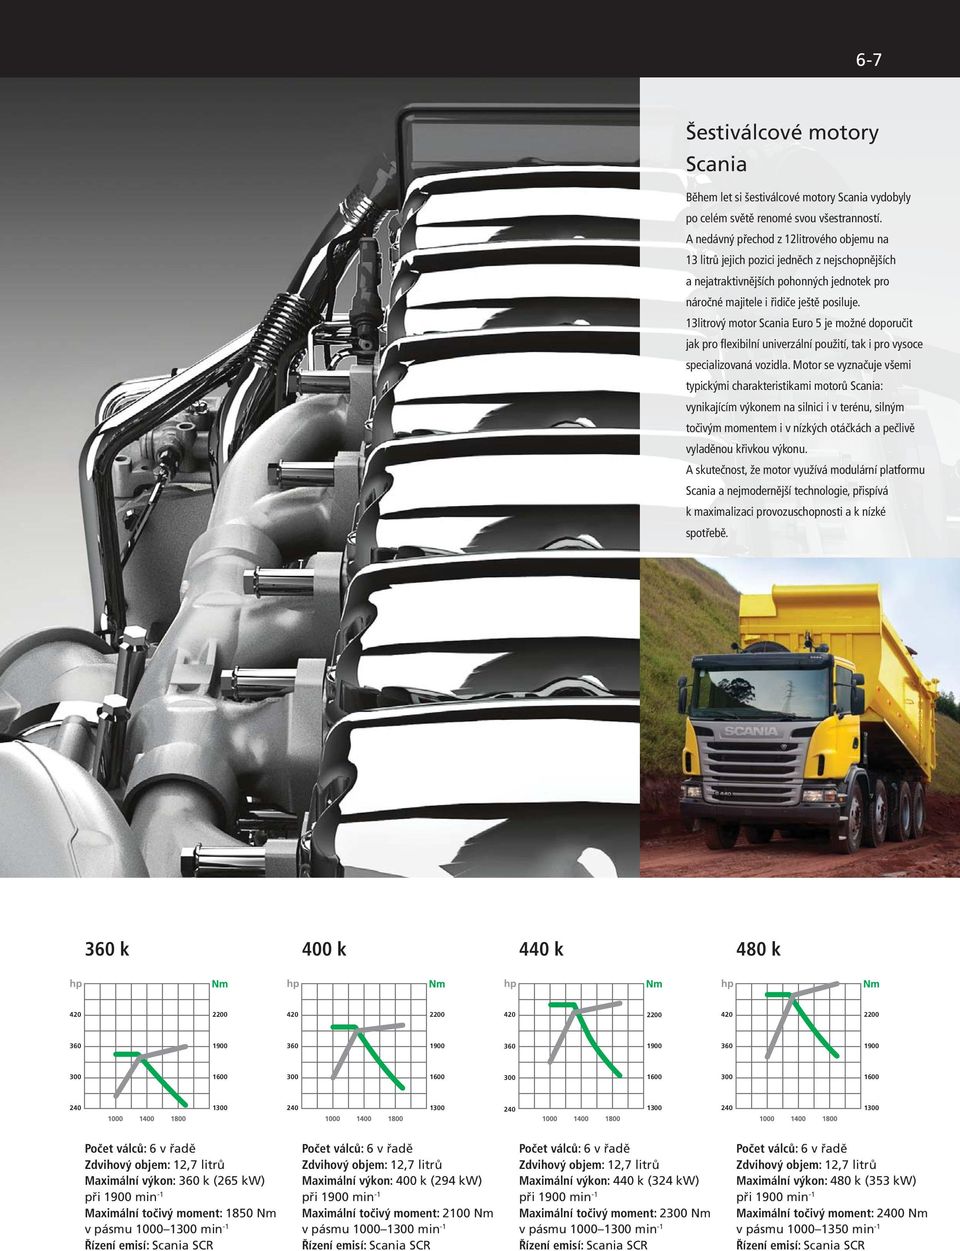 13litrový motor Scania Euro 5 je možné doporučit jak pro flexibilní univerzální použití, tak i pro vysoce specializovaná vozidla.